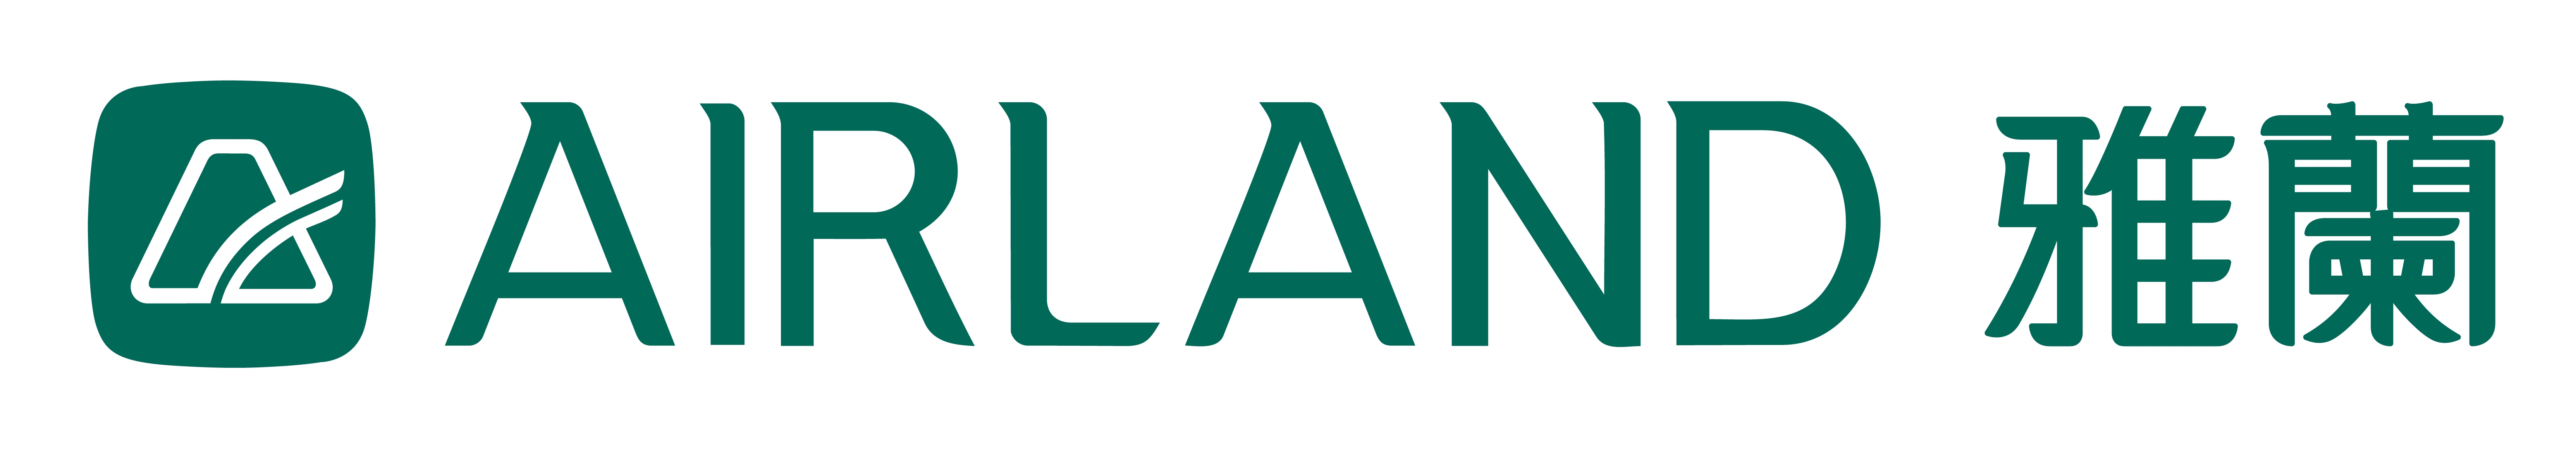 Airland logo